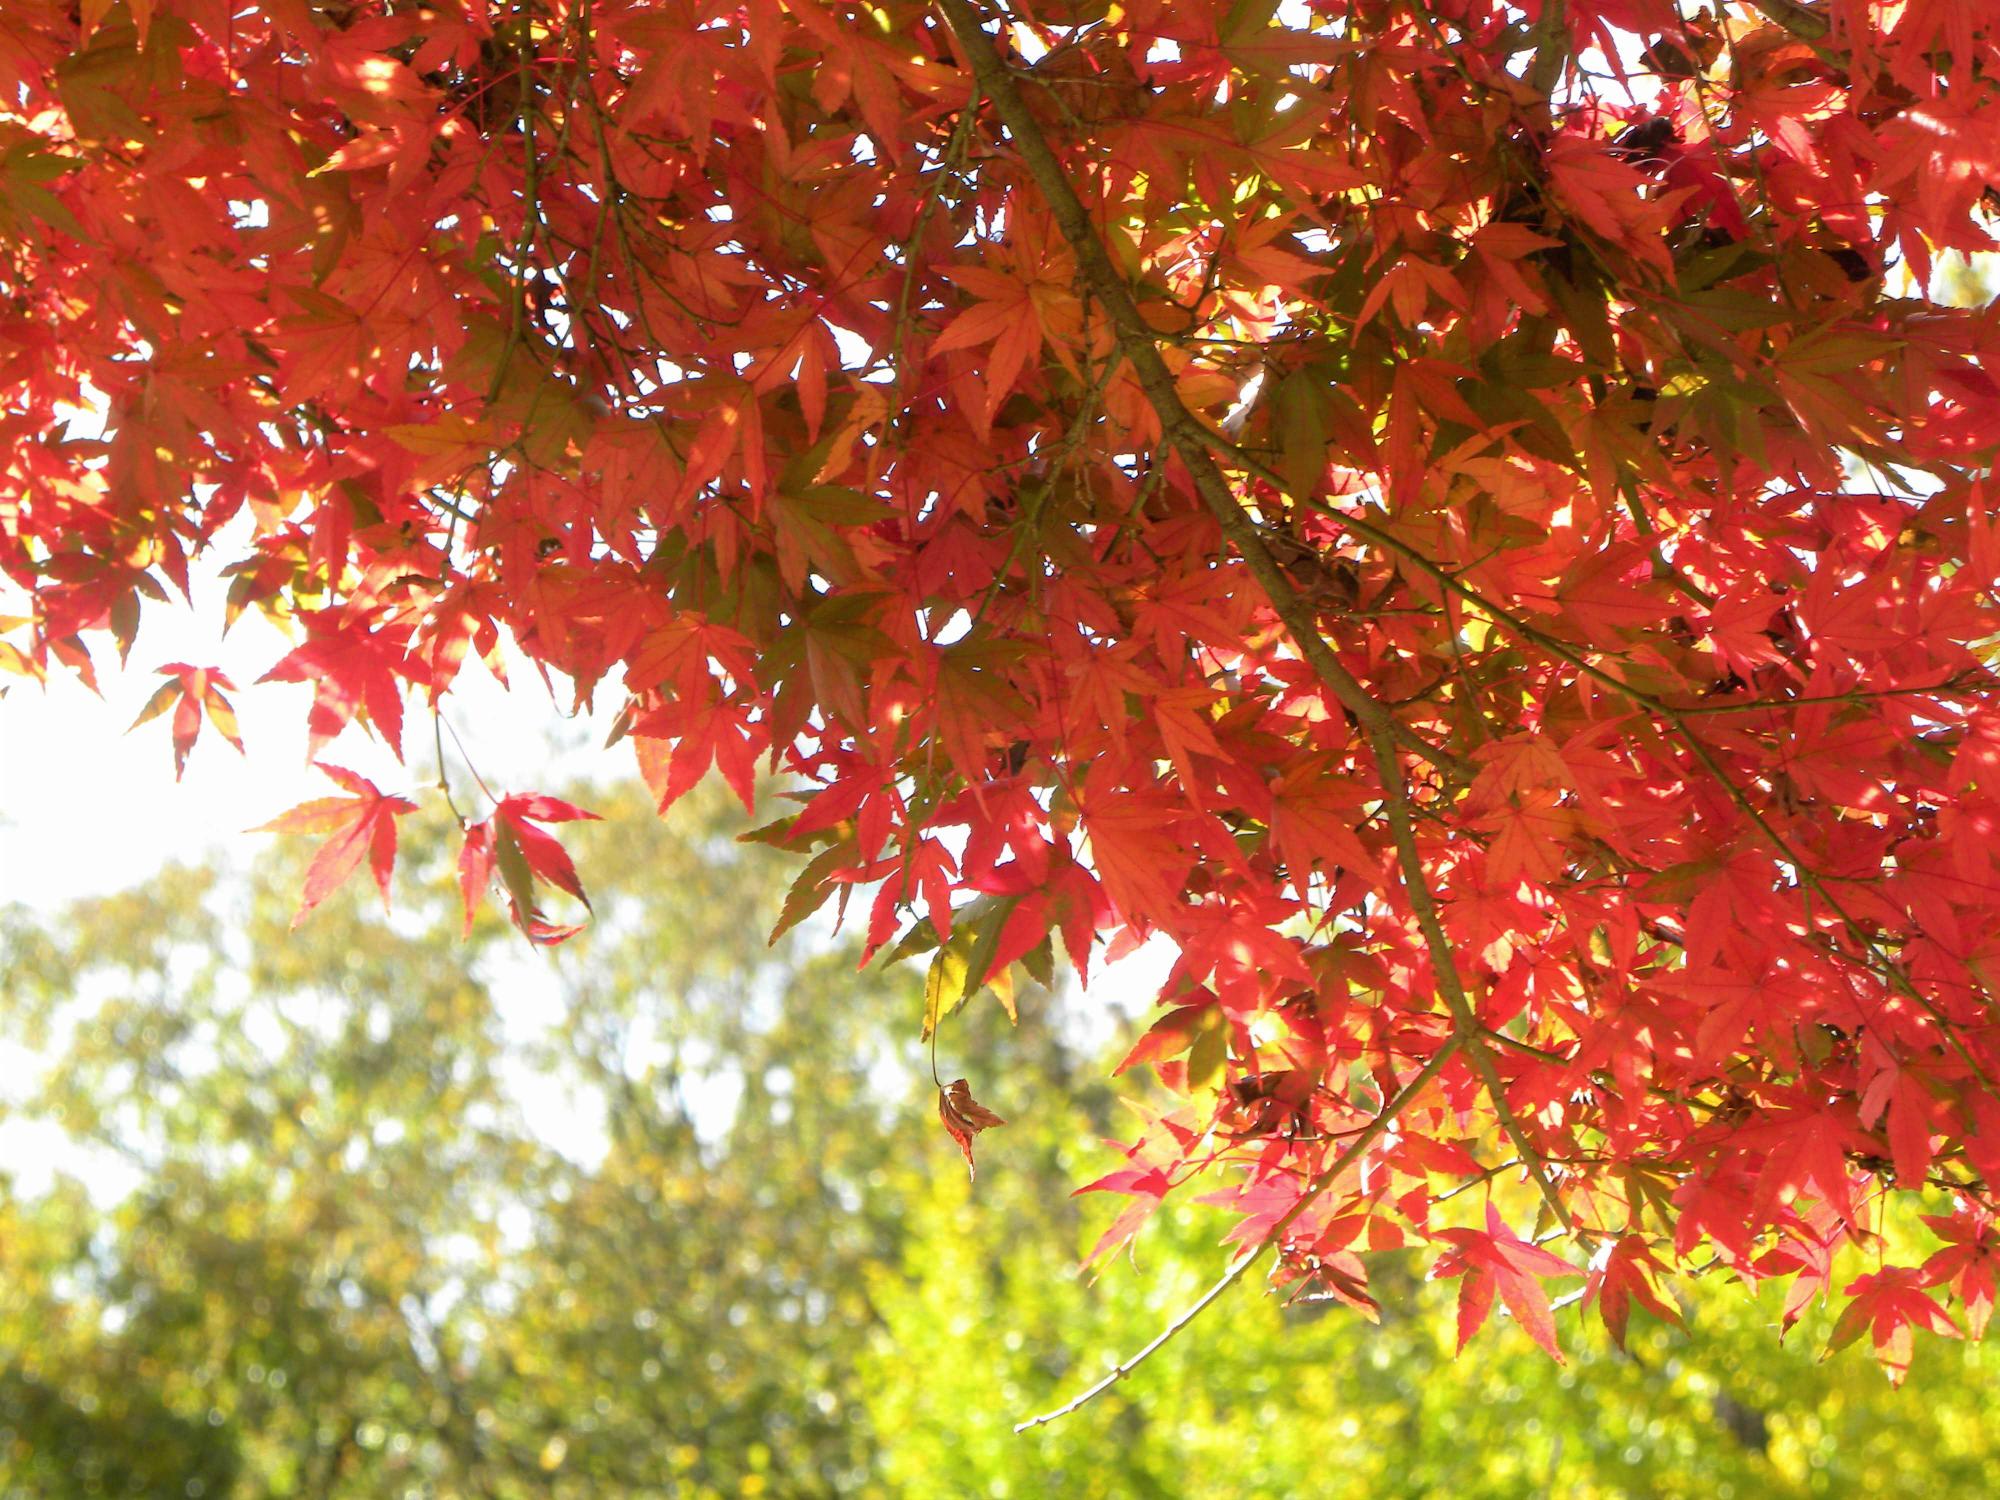 真っ赤な紅葉と黄緑の葉を付けた木々の共演